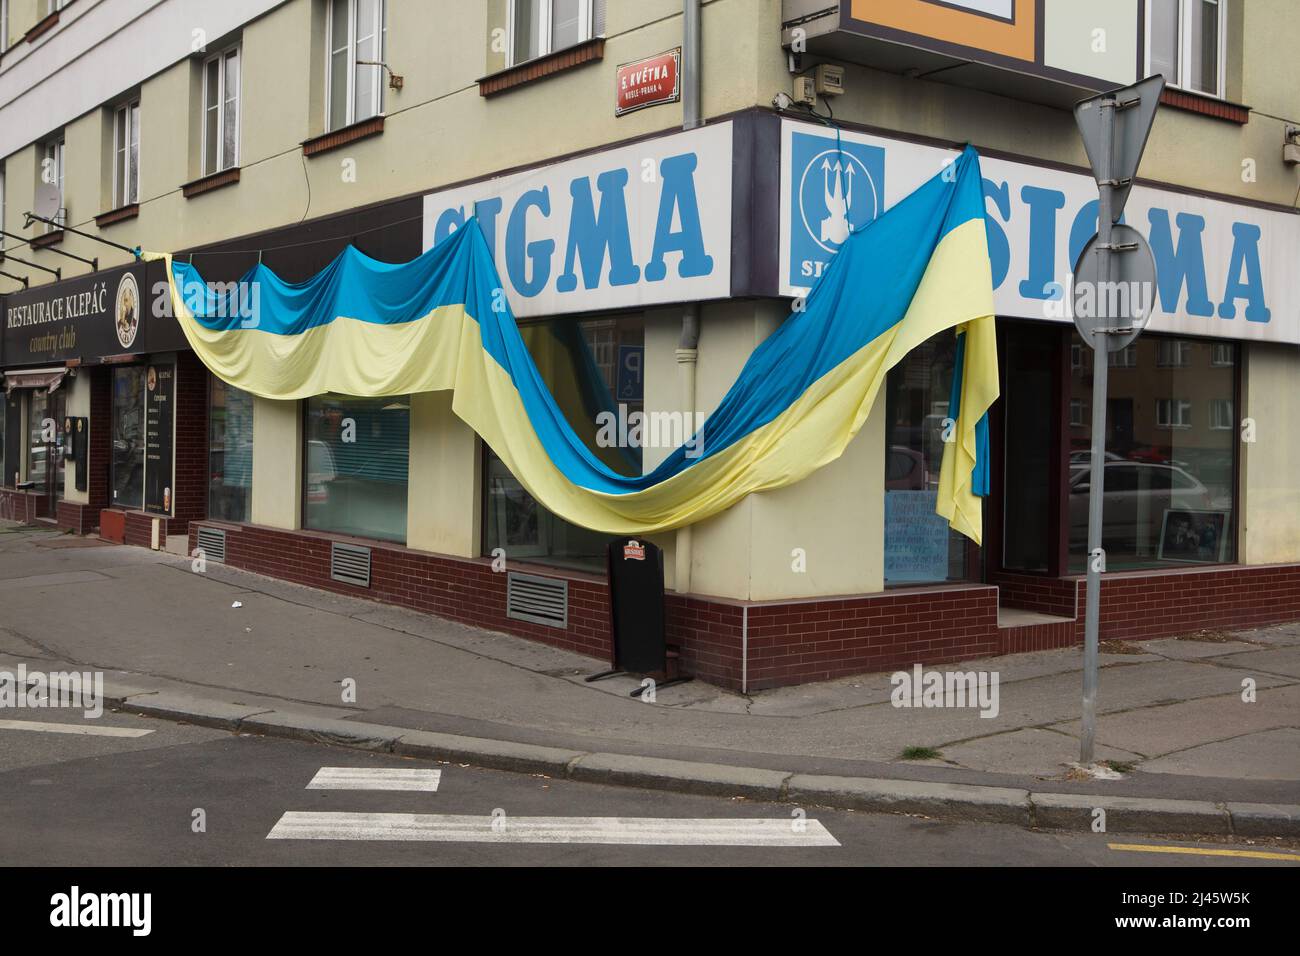 Ukrainische Nationalflagge auf dem Sigma Store im Bezirk Pankrác in Prag, Tschechische Republik, abgebildet am 15. März 2022. Die riesige Flagge wurde aufgehängt, um ukrainische Flüchtlinge in der Tschechischen Republik zu unterstützen und gegen die russische Invasion in der Ukraine im Jahr 2022 zu protestieren. Stockfoto